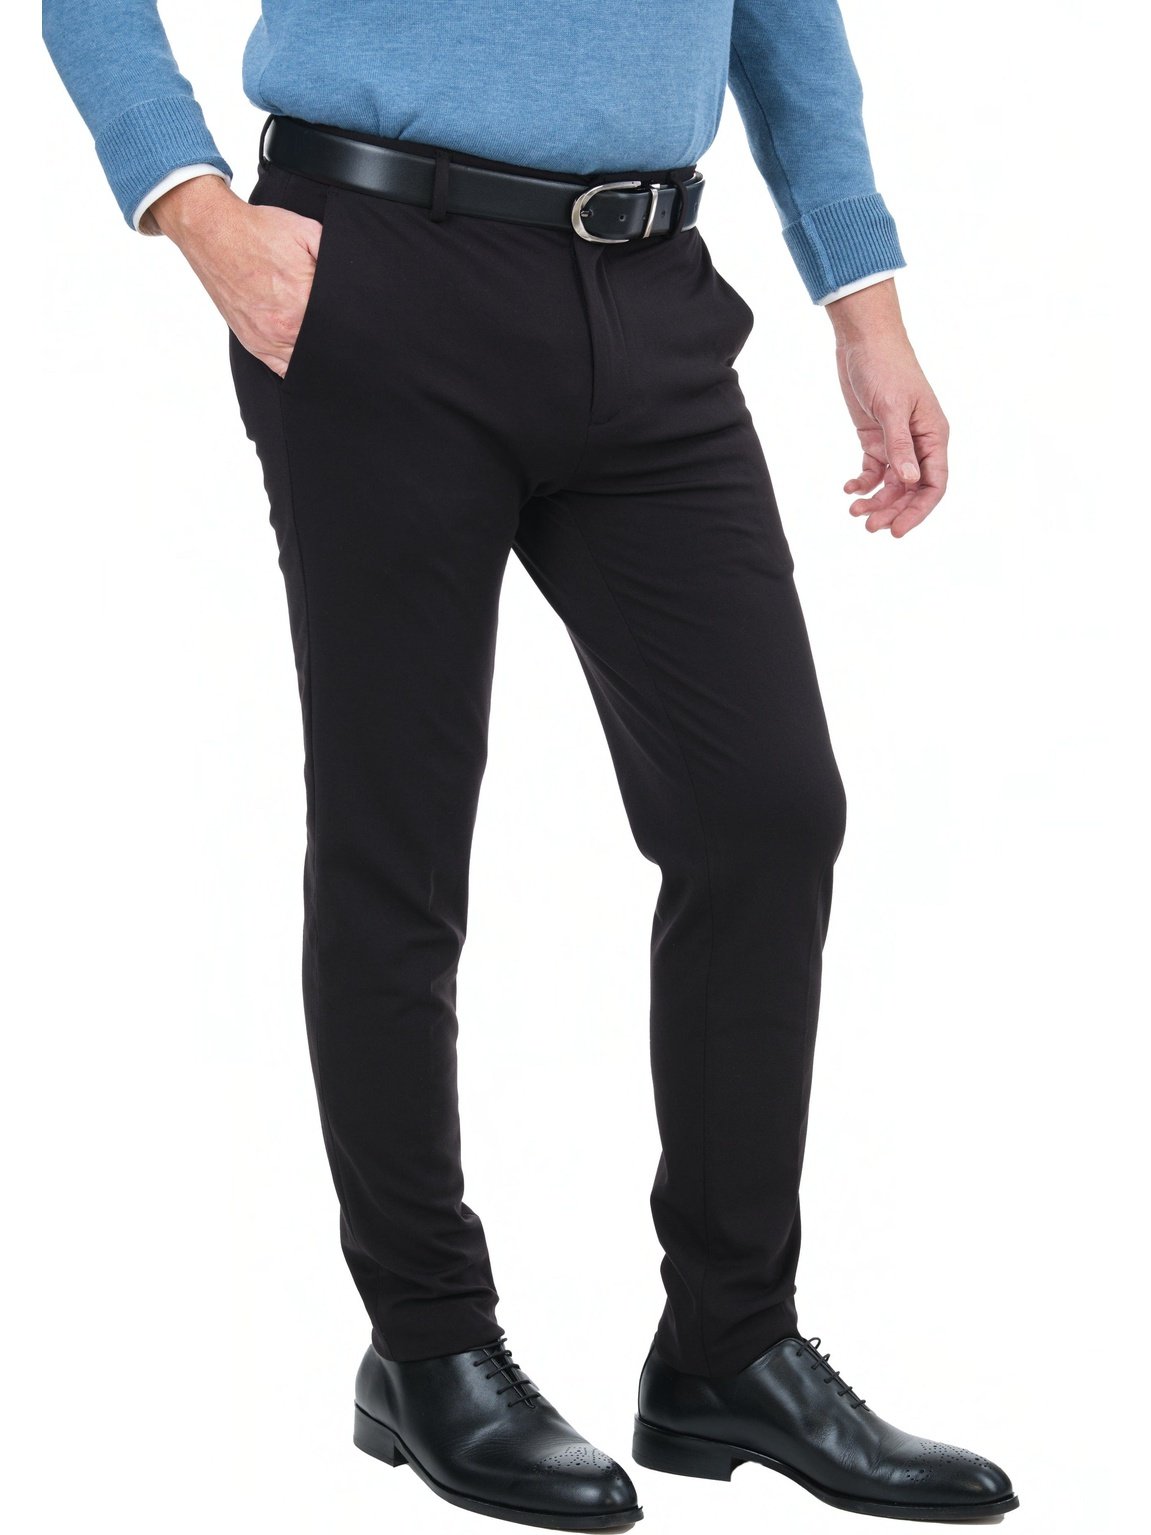 Mazari PANTS Mazari Mens Solid Black Slim Fit Flat Front 4 Way Stretch Dress Pants